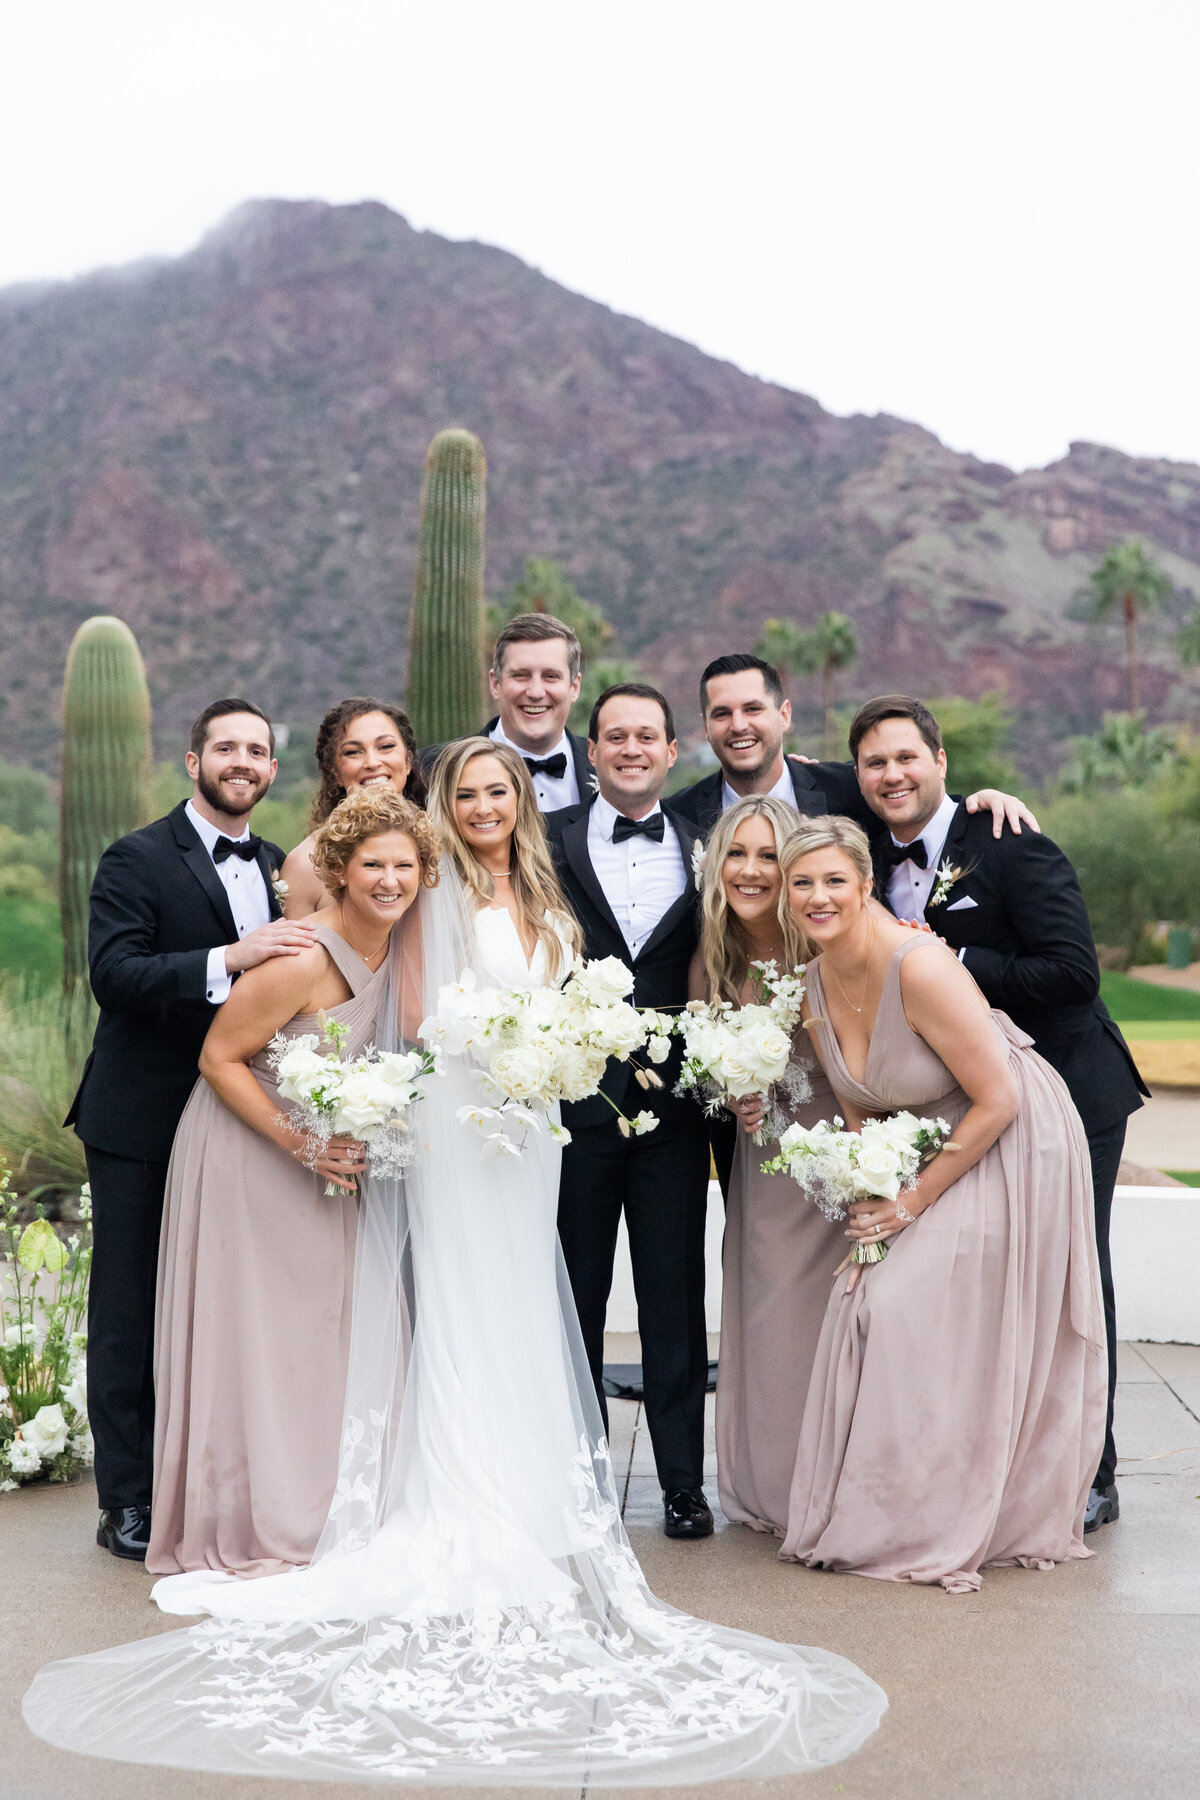 Karlie Colleen Photography - Molly & Casey - Mountain Shadows - Paradise Valley Arizona Wedding-549